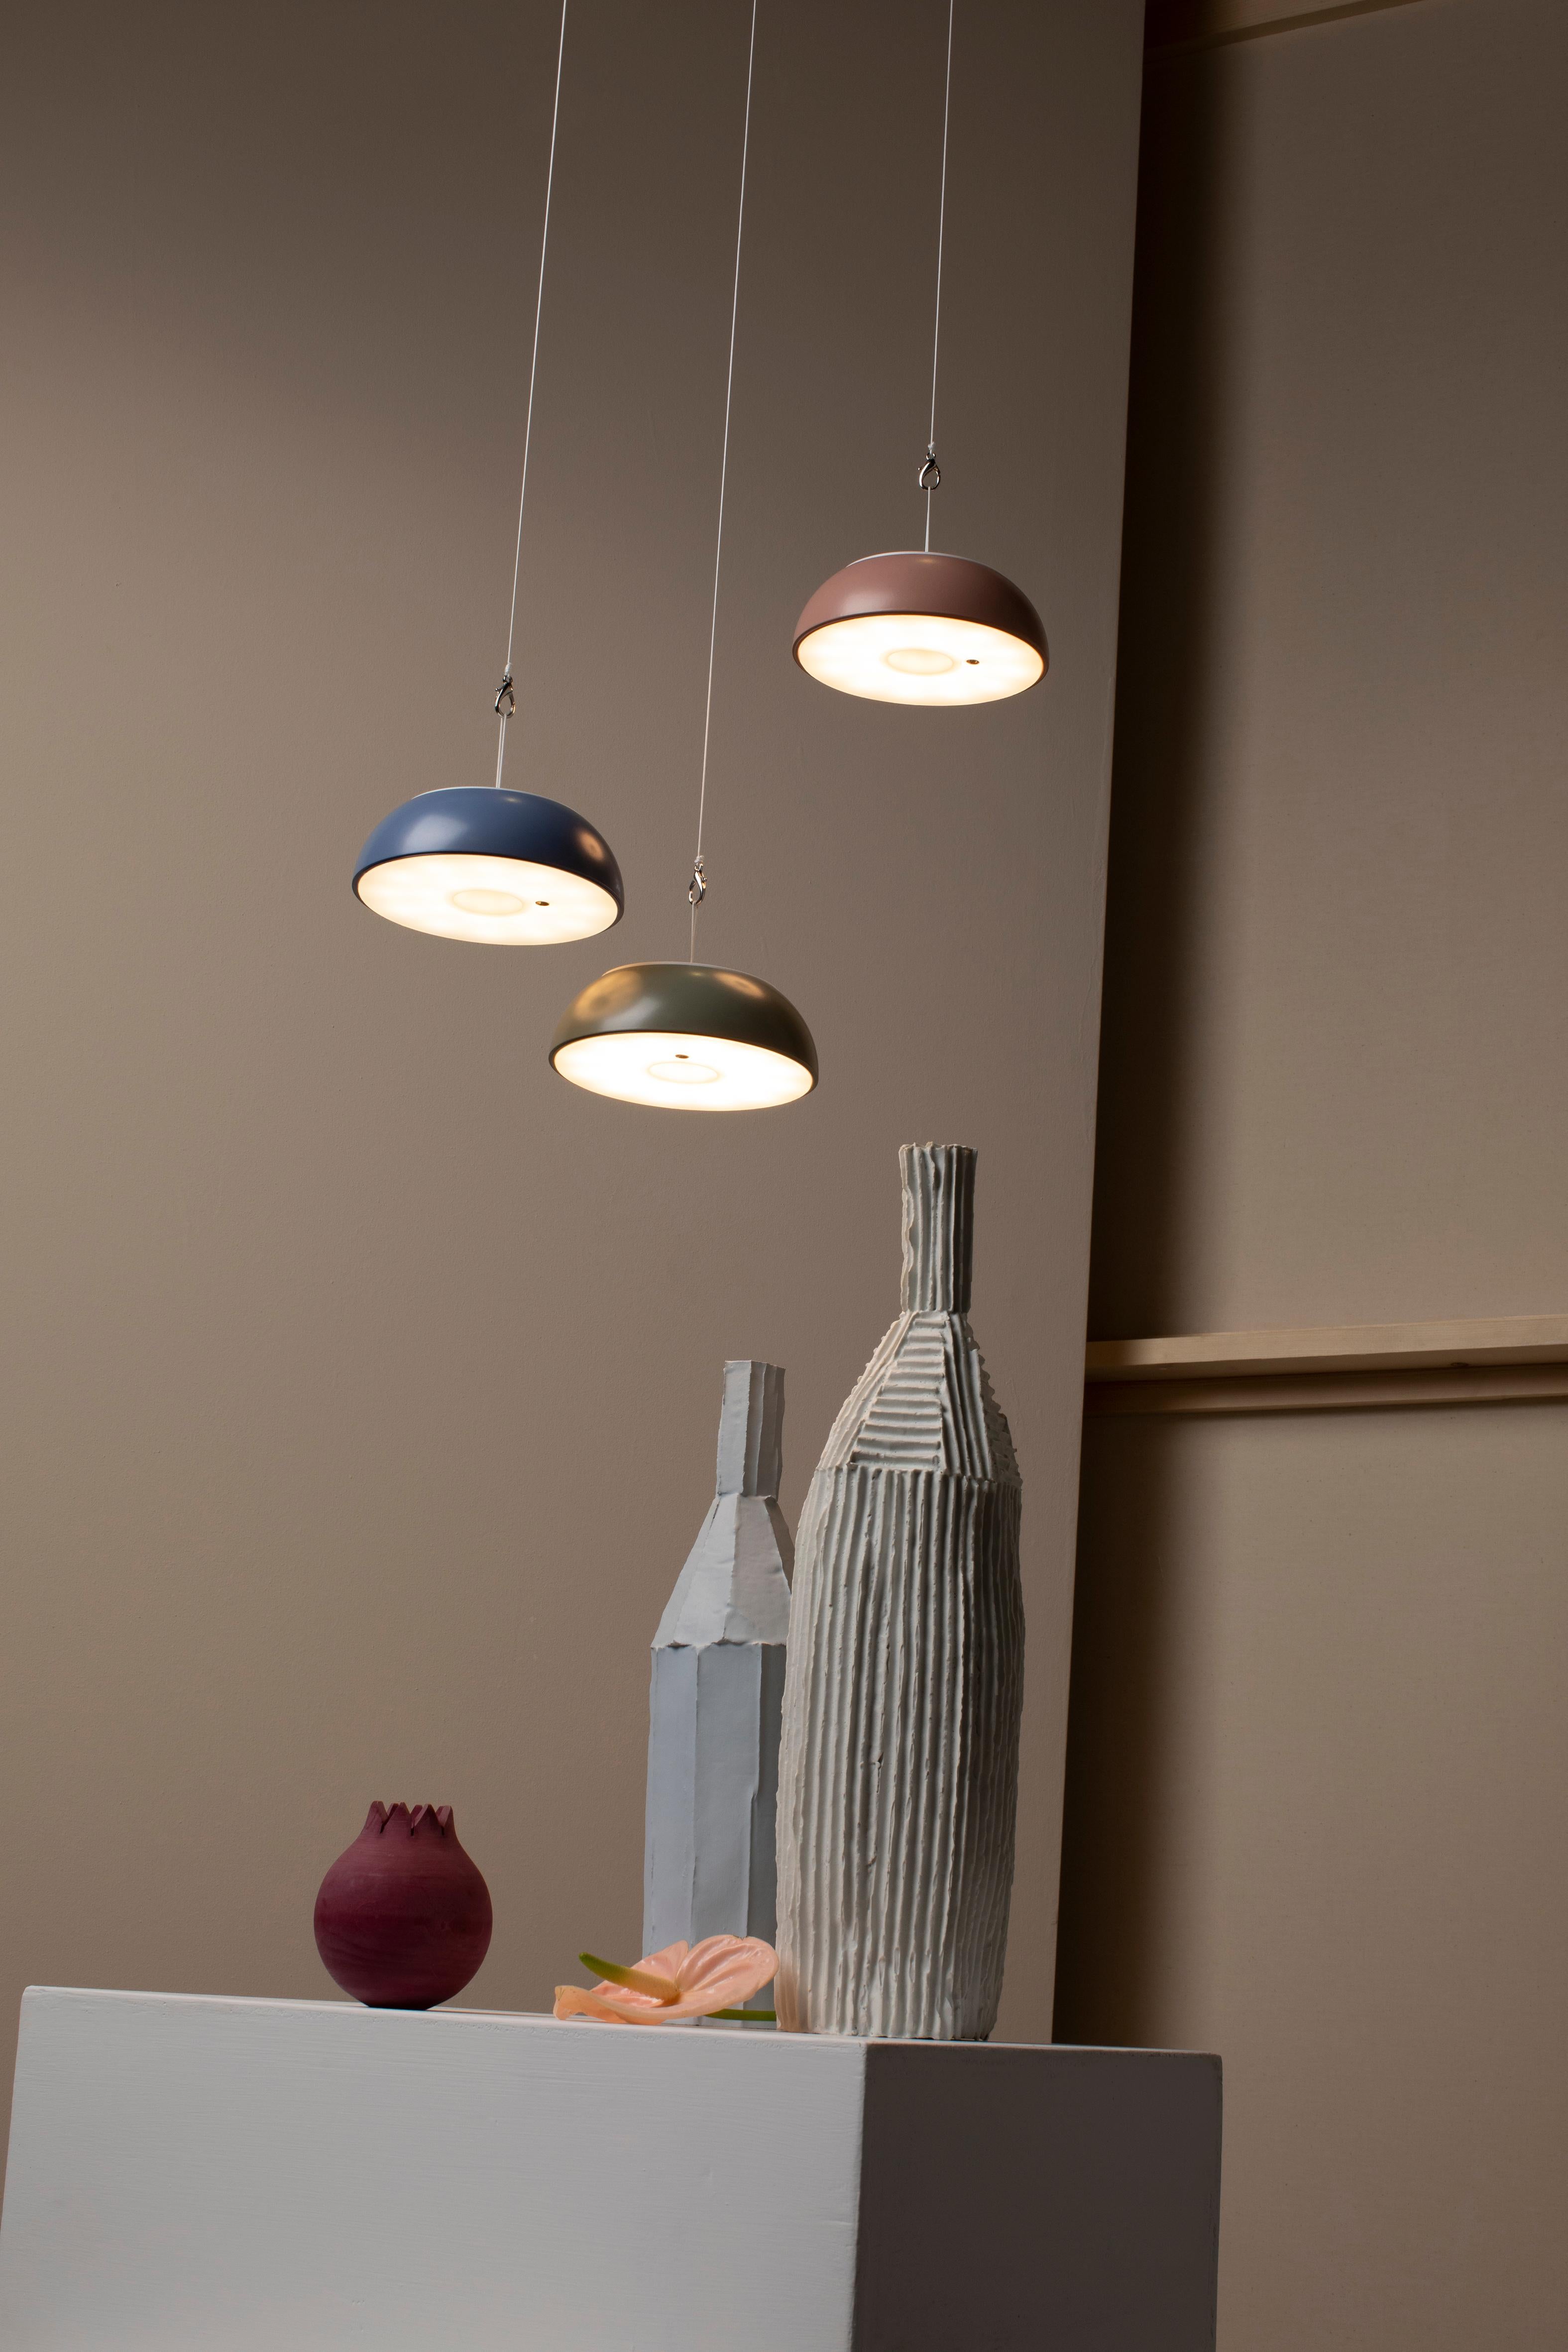 Axolight Schwebende Hängeleuchte aus Betongrünem Aluminium von Mario Alessiani

Aus dem Erfindungsreichtum von Axolight und der Kreativität des Designers Mario Alessiani entstand Float, eine multifunktionale und tragbare Leuchte, die sowohl im